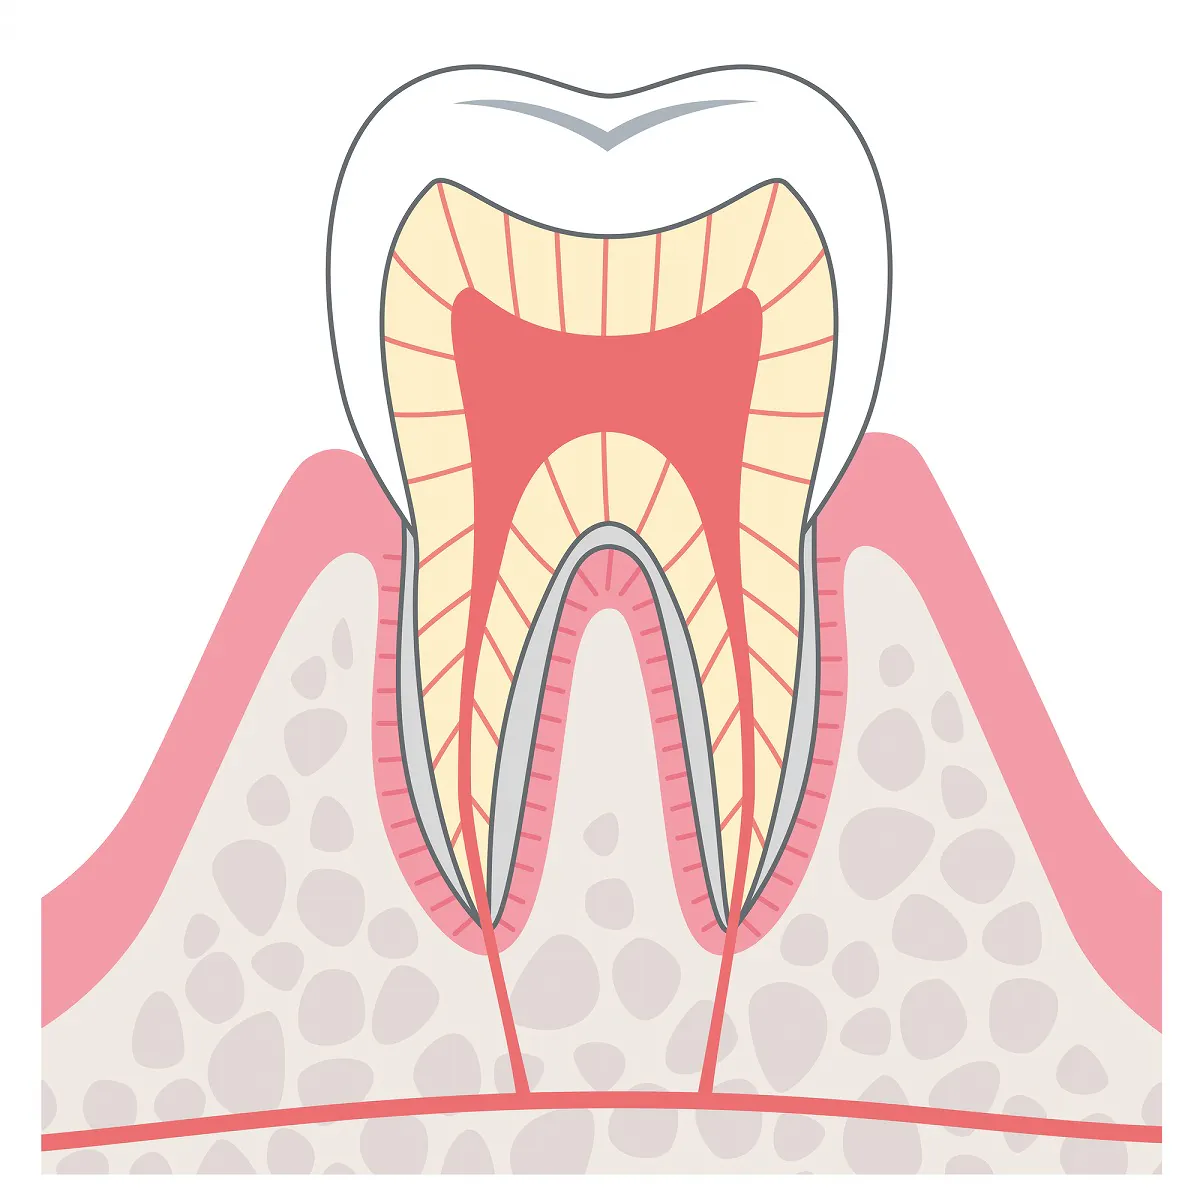 むし歯の進行と治療方法